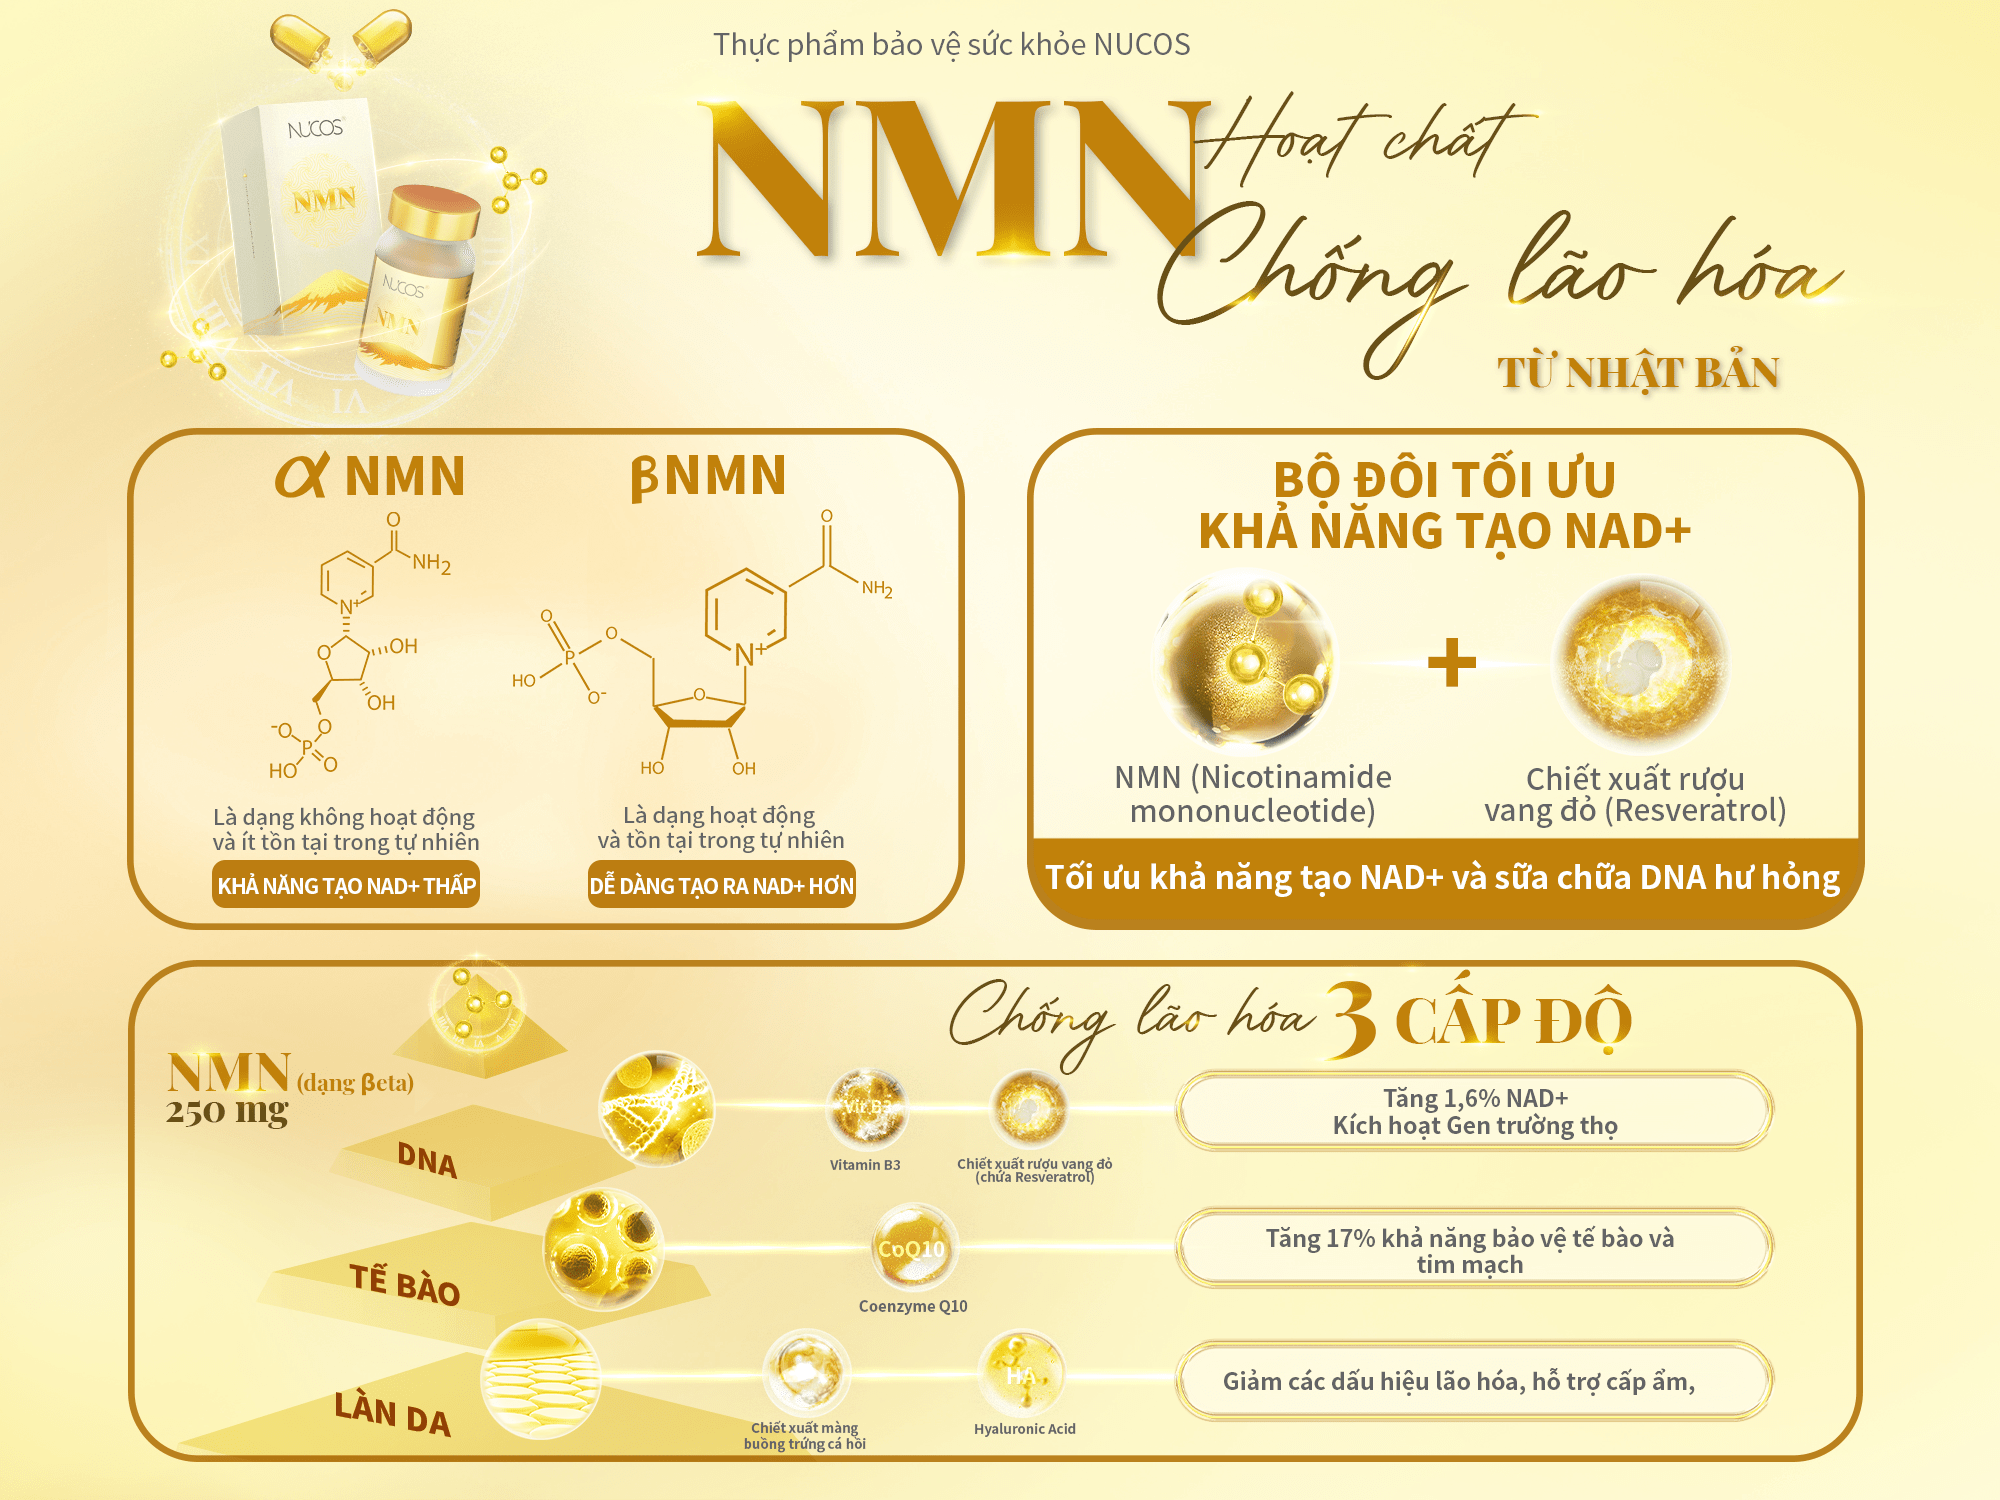 NMN có thể giúp tăng cường sức khỏe, kéo dài tuổi thọ và giảm nguy cơ mắc các bệnh mãn tính.